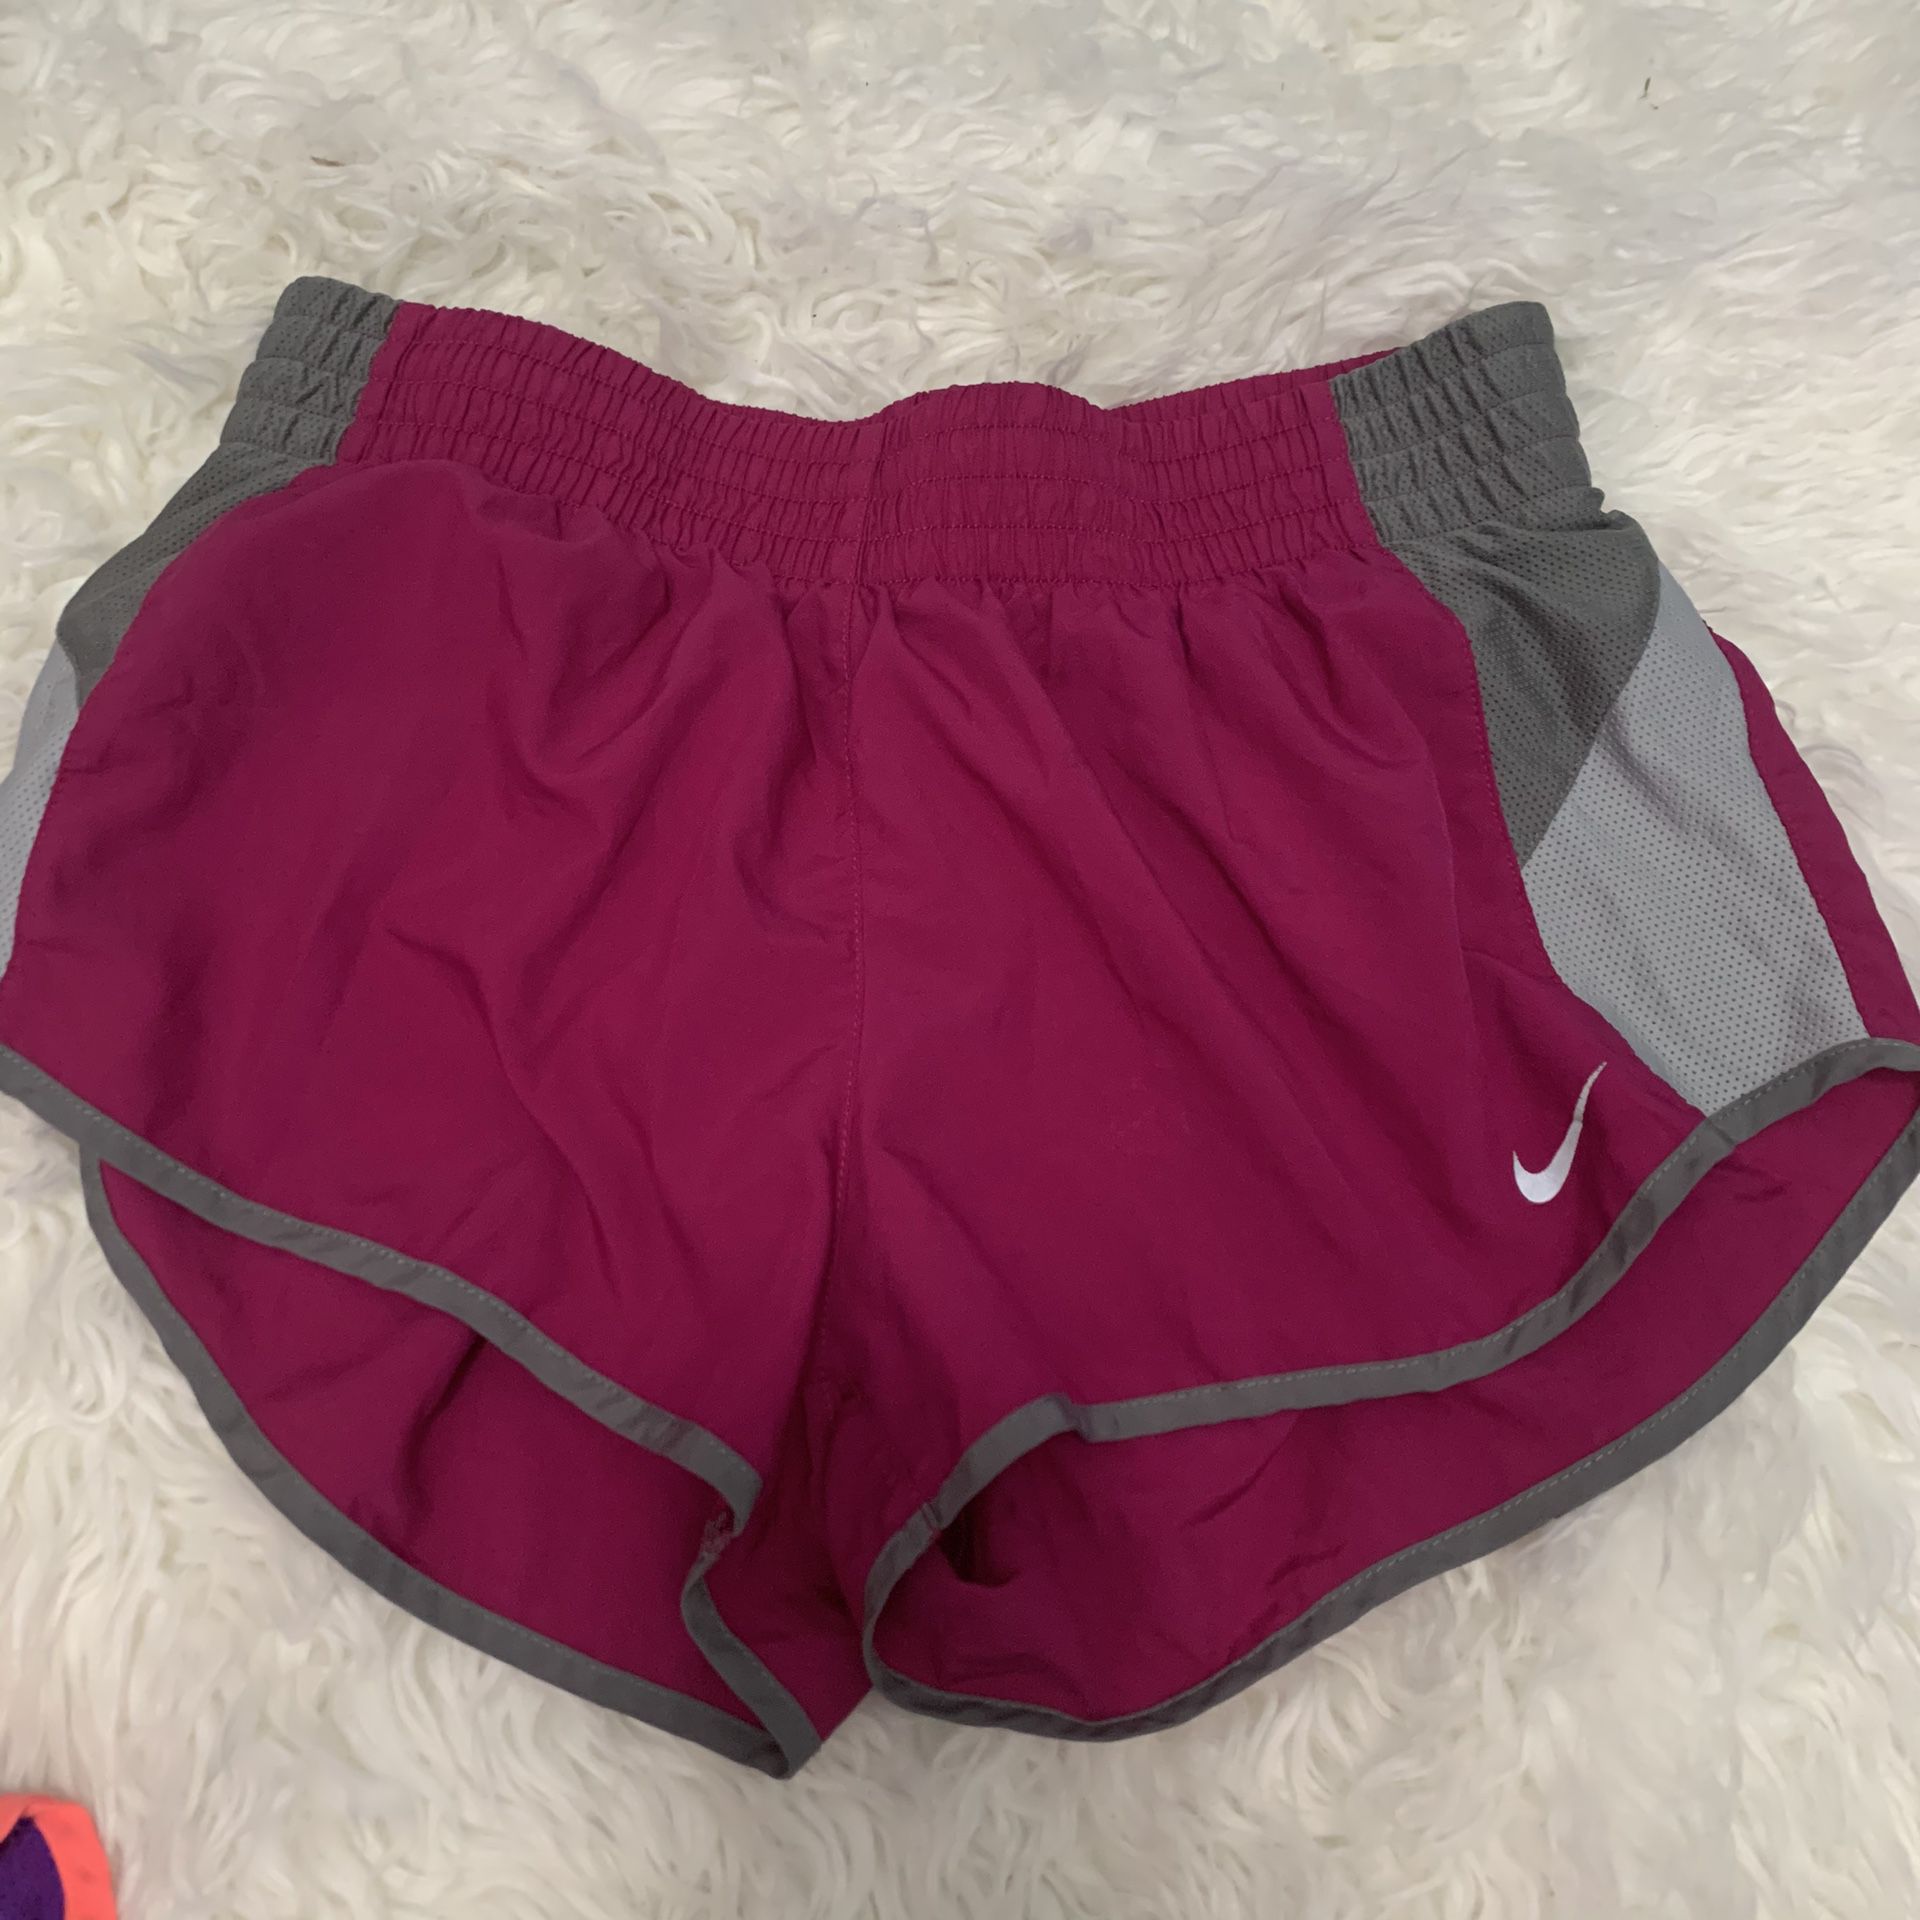 Nike running shorts size medium